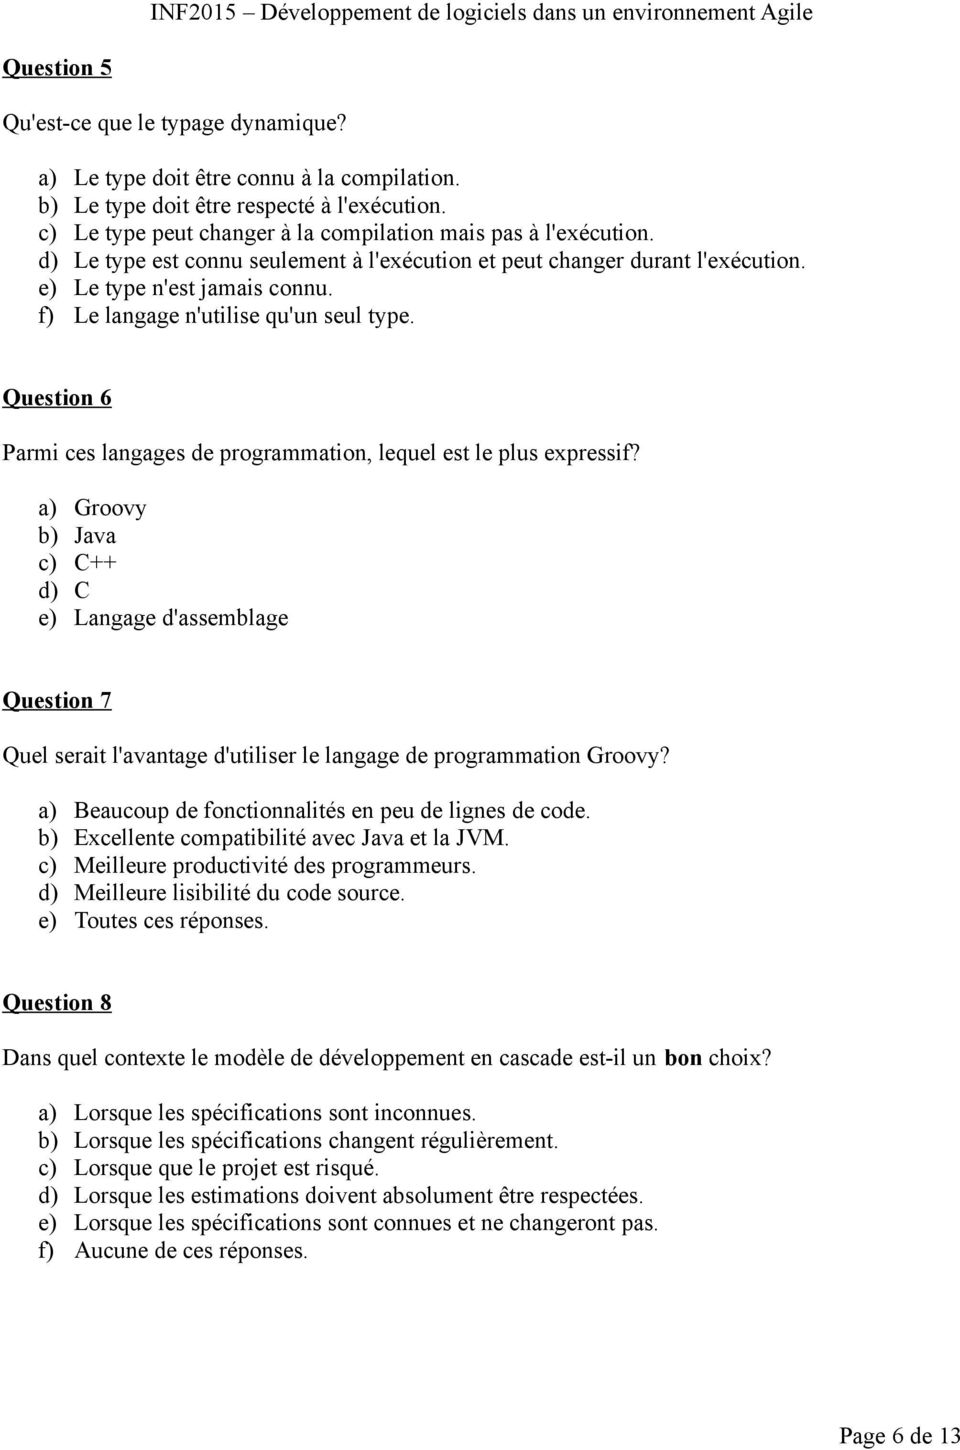 Question 6 Parmi ces langages de programmation, lequel est le plus expressif?